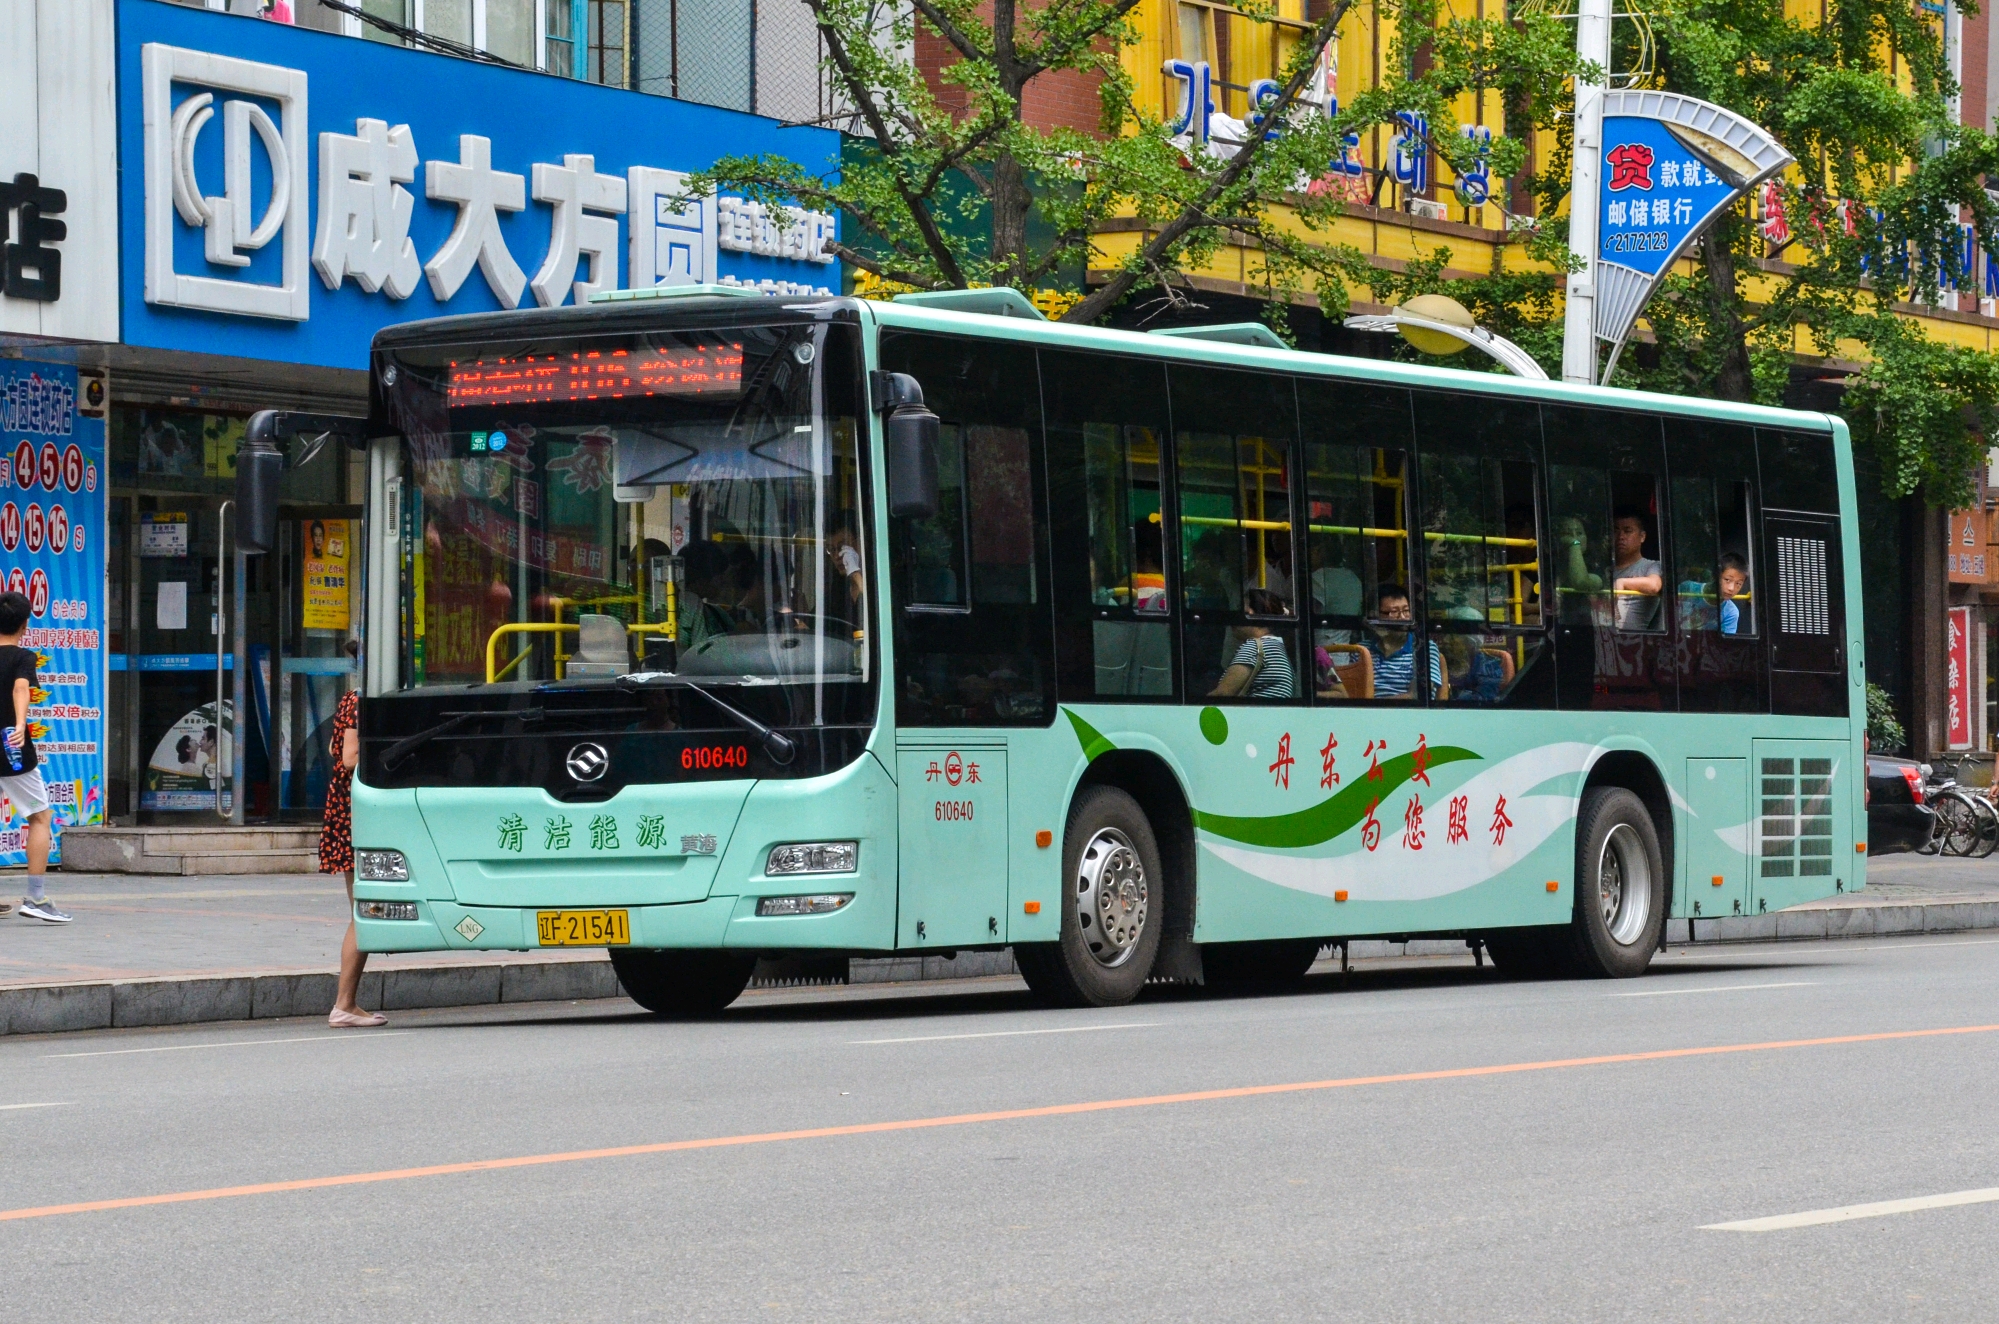 丹东公交(丹东市公交总公司)线路配车概况及图集(三)截至2020.